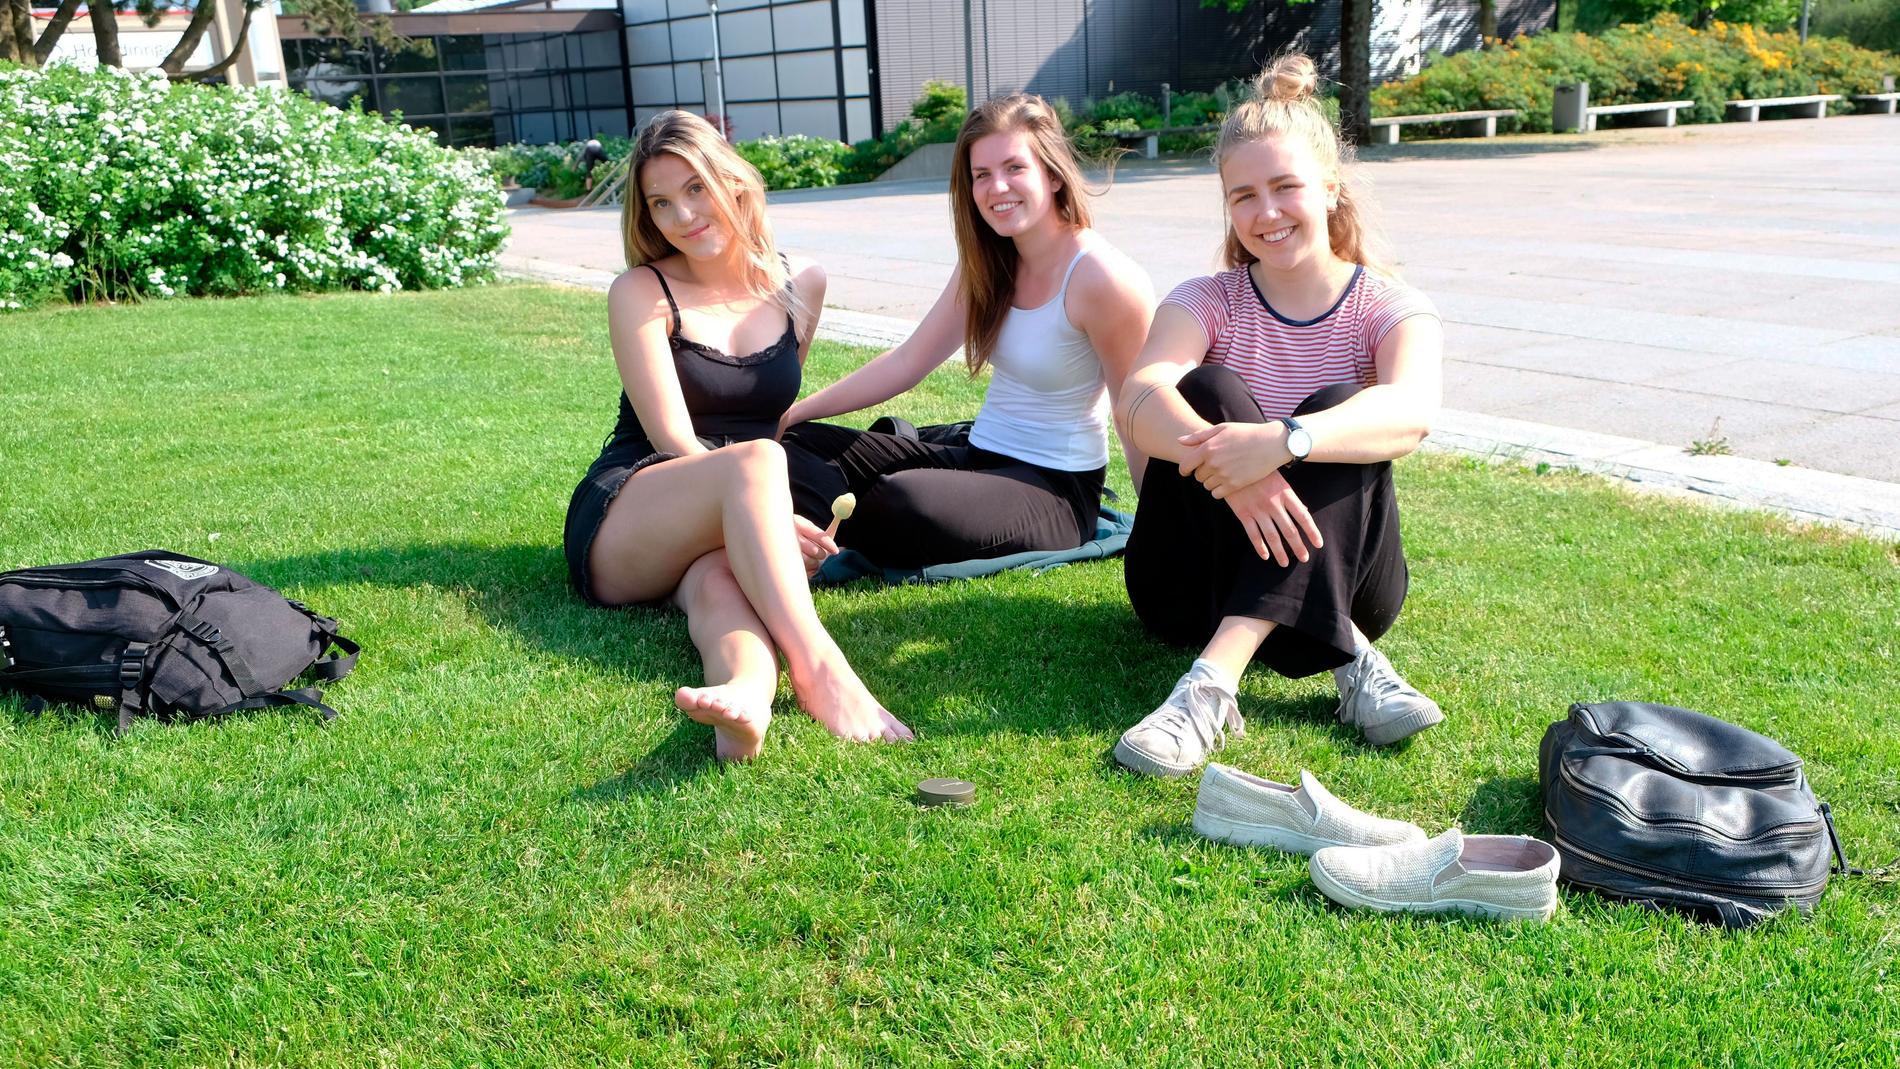  Fra venstre til høyre: Alina Cecilie Sævik (21), Linnea Rismyhr (19)og Sara Skei Tønset (20). Kun én av dem snuser fast, men de sier ikke nei takk til en festrøyk iblant.  